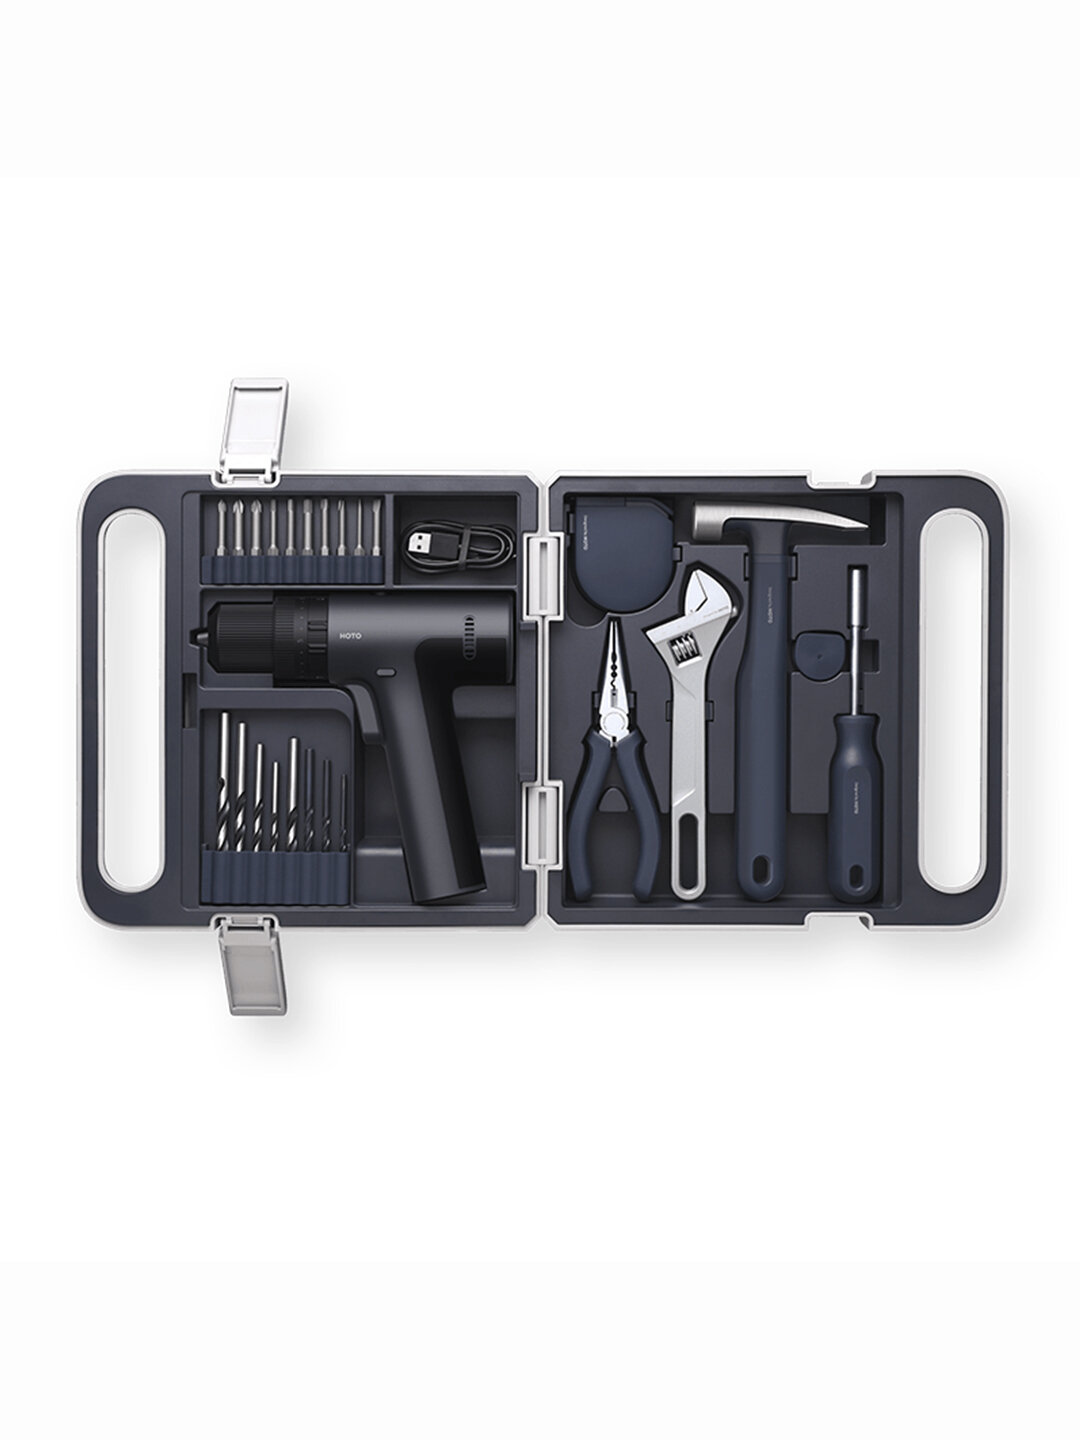 Набор инструментов Xiaomi Hoto Monkey 12V Impact Drill Tool Kit (QWDZGJ001)